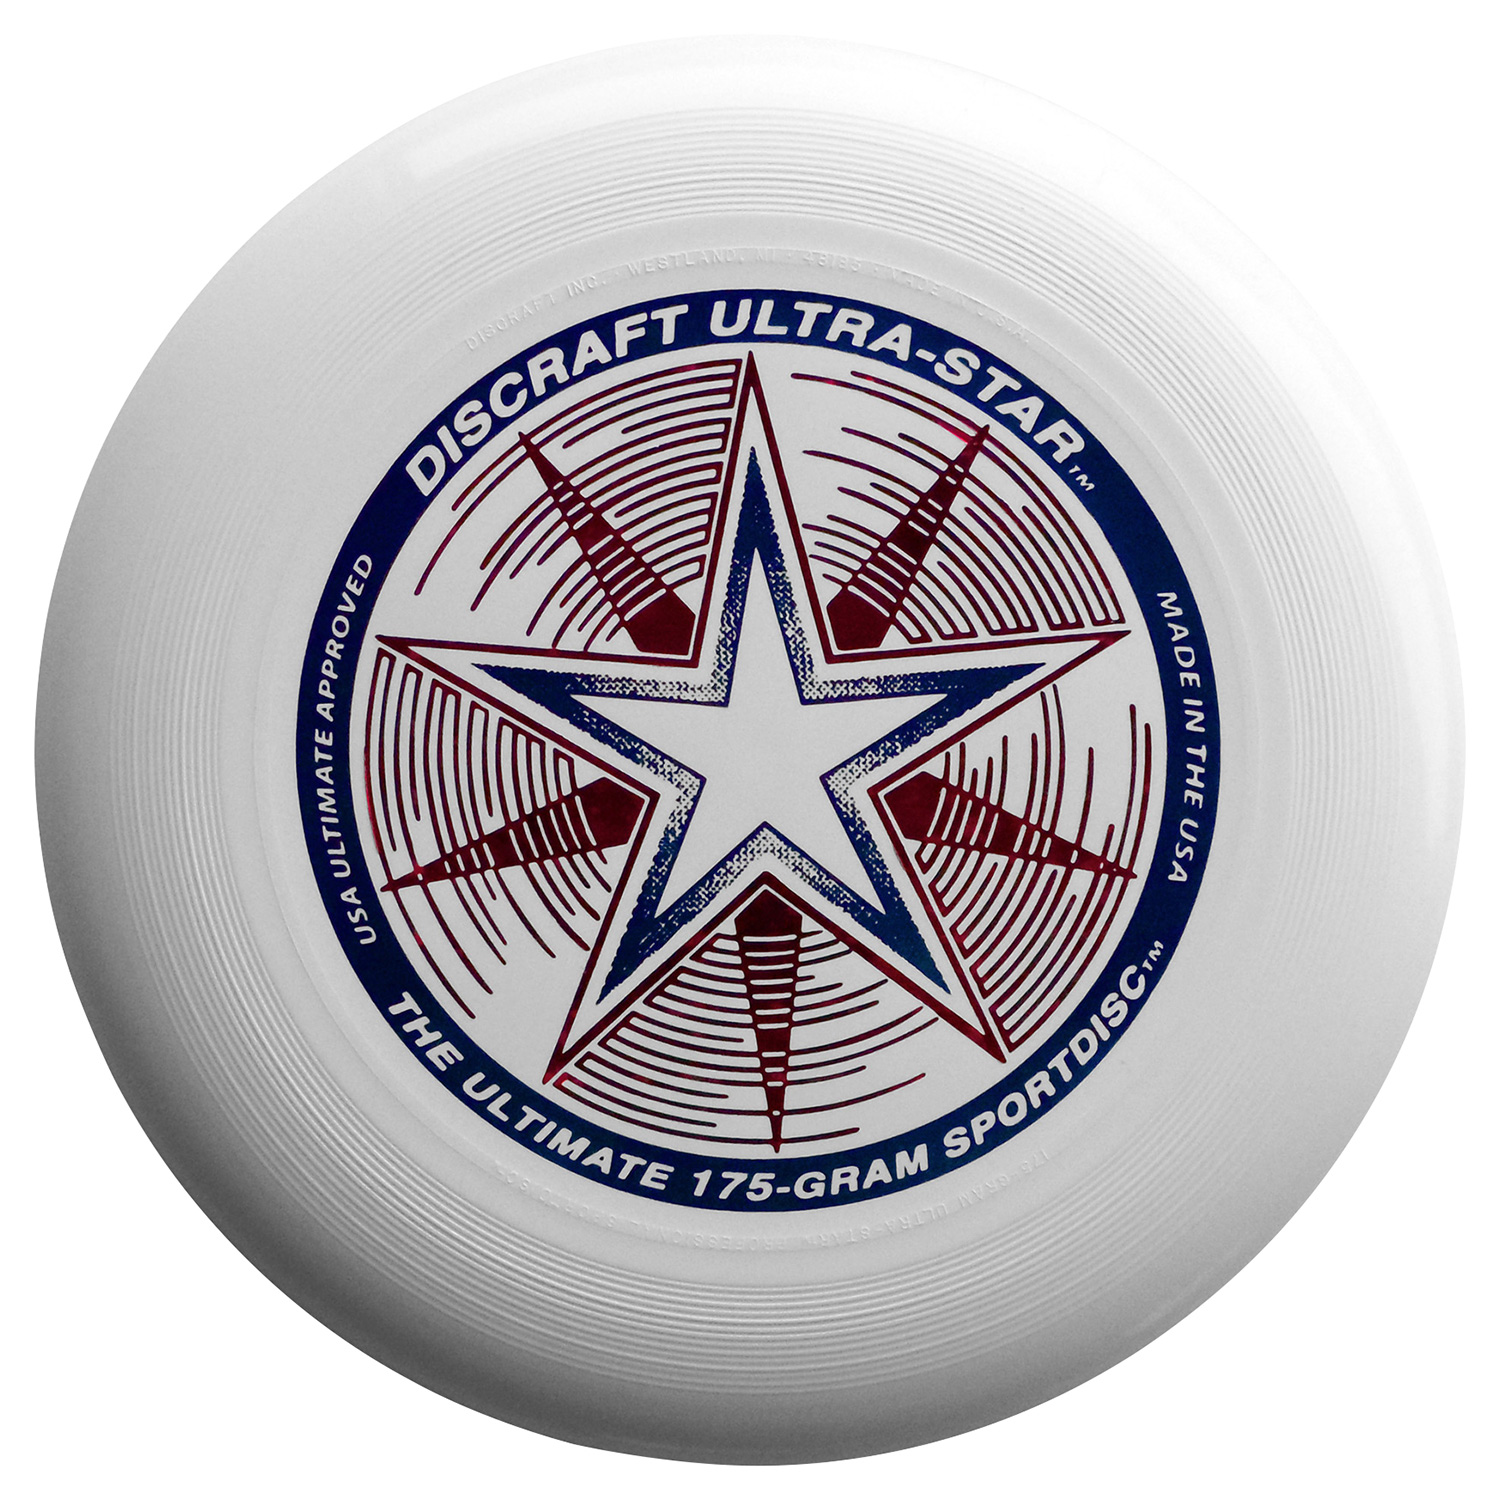 Frisbee Discraft Ultrastar white 175 grams